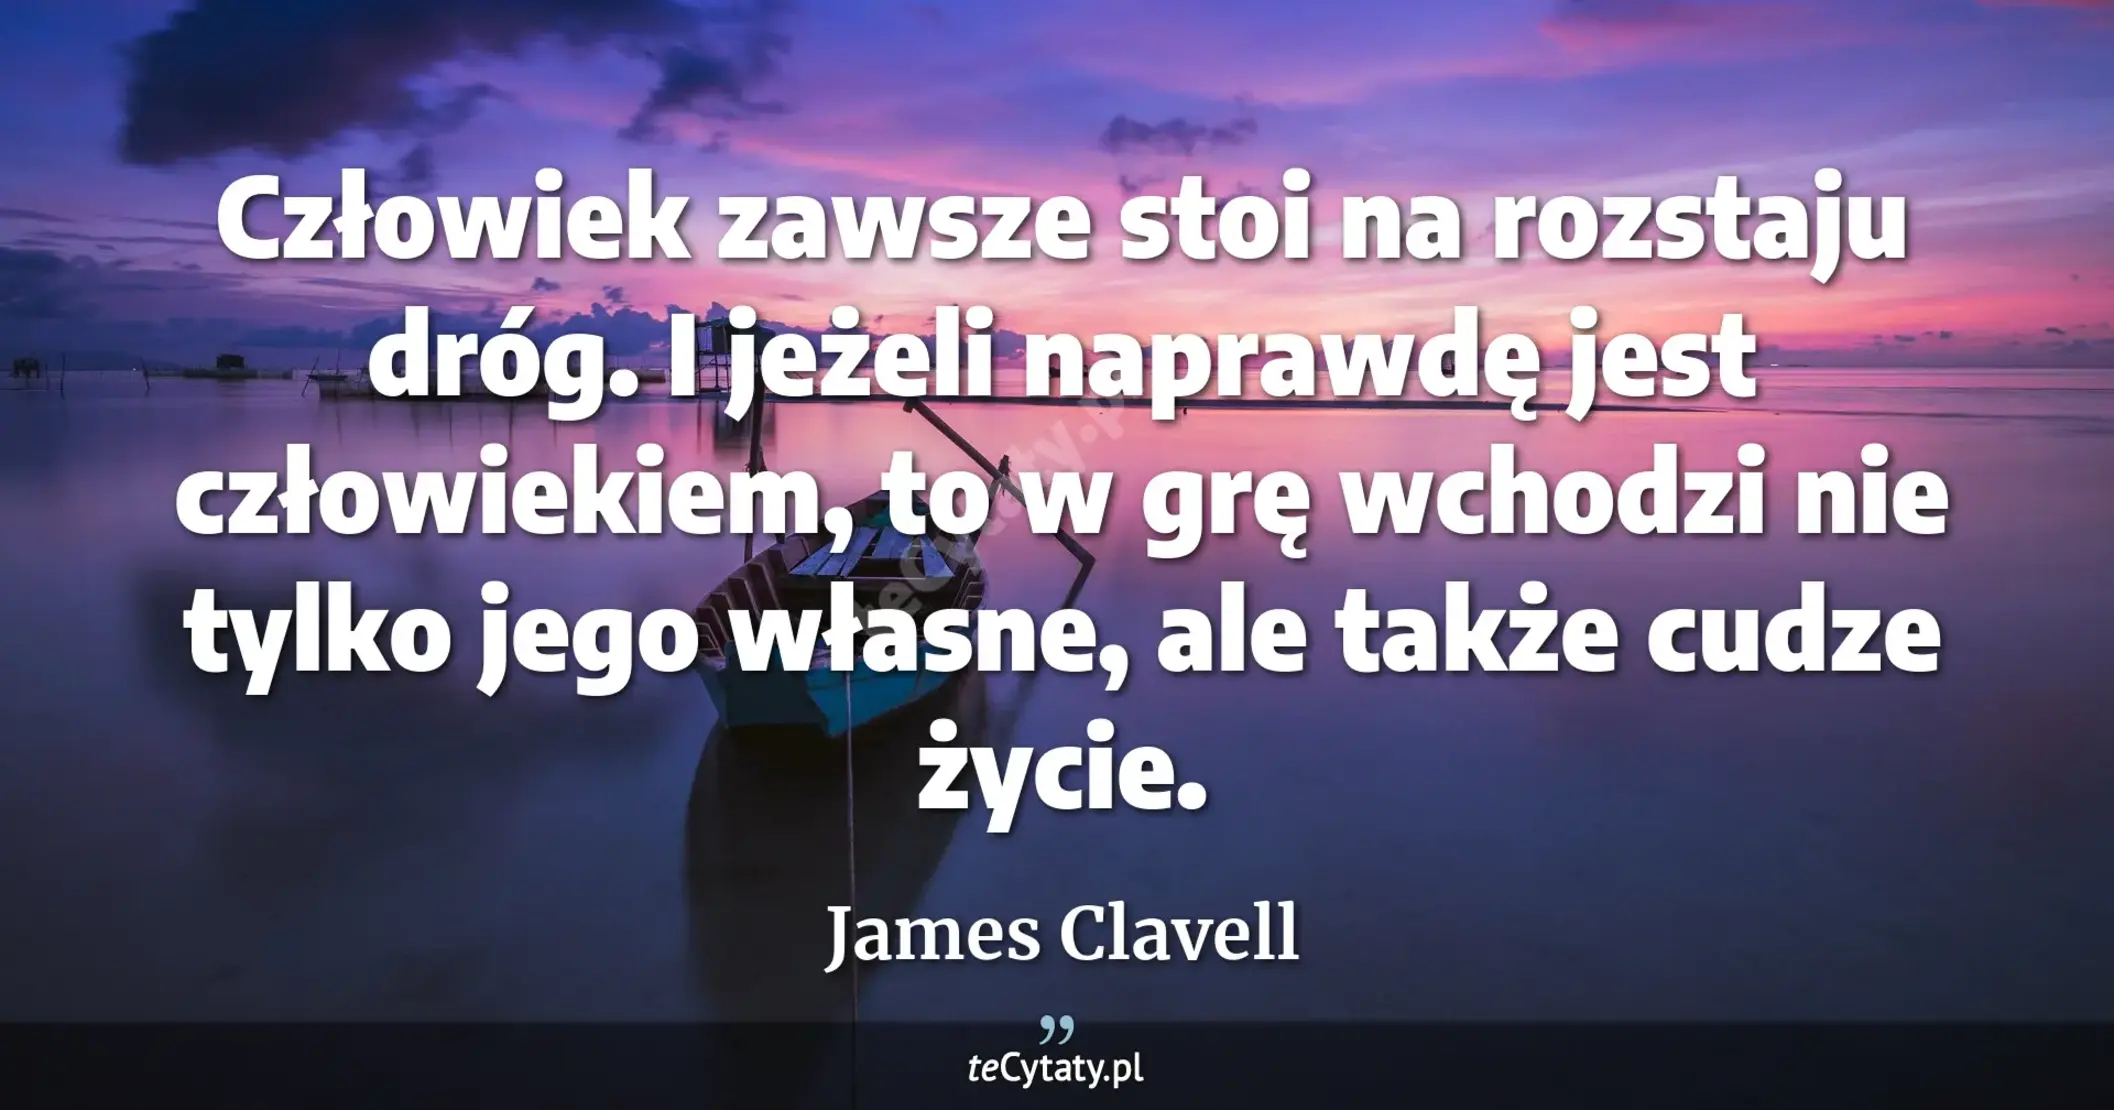 Człowiek zawsze stoi na rozstaju dróg. I jeżeli naprawdę jest człowiekiem, to w grę wchodzi nie tylko jego własne, ale także cudze życie. - James Clavell